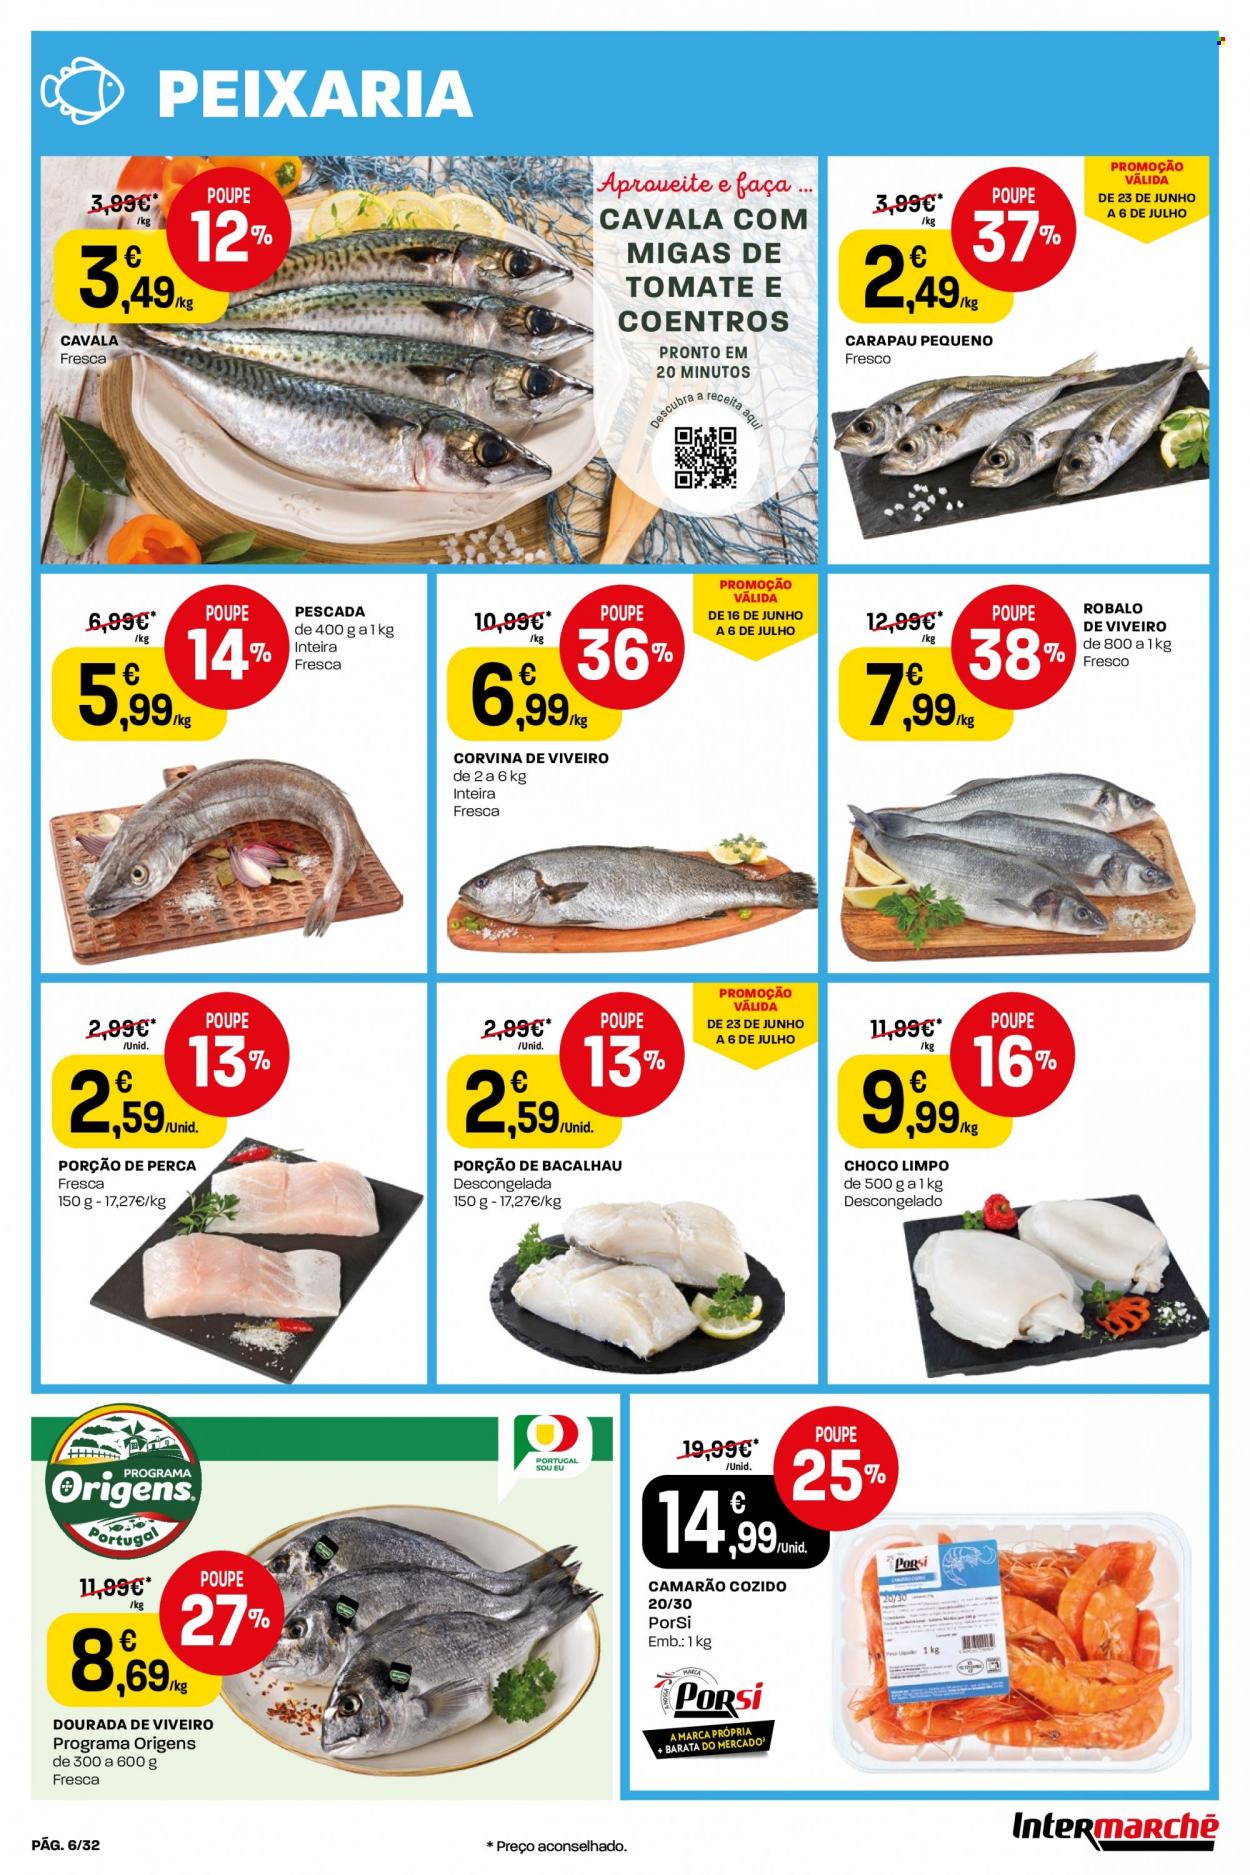 thumbnail - Folheto Intermarché - 30.6.2022 - 6.7.2022 - Produtos em promoção - camarão, bacalhau, corvina, robalo, choco limpo, carapau, coentros. Página 6.